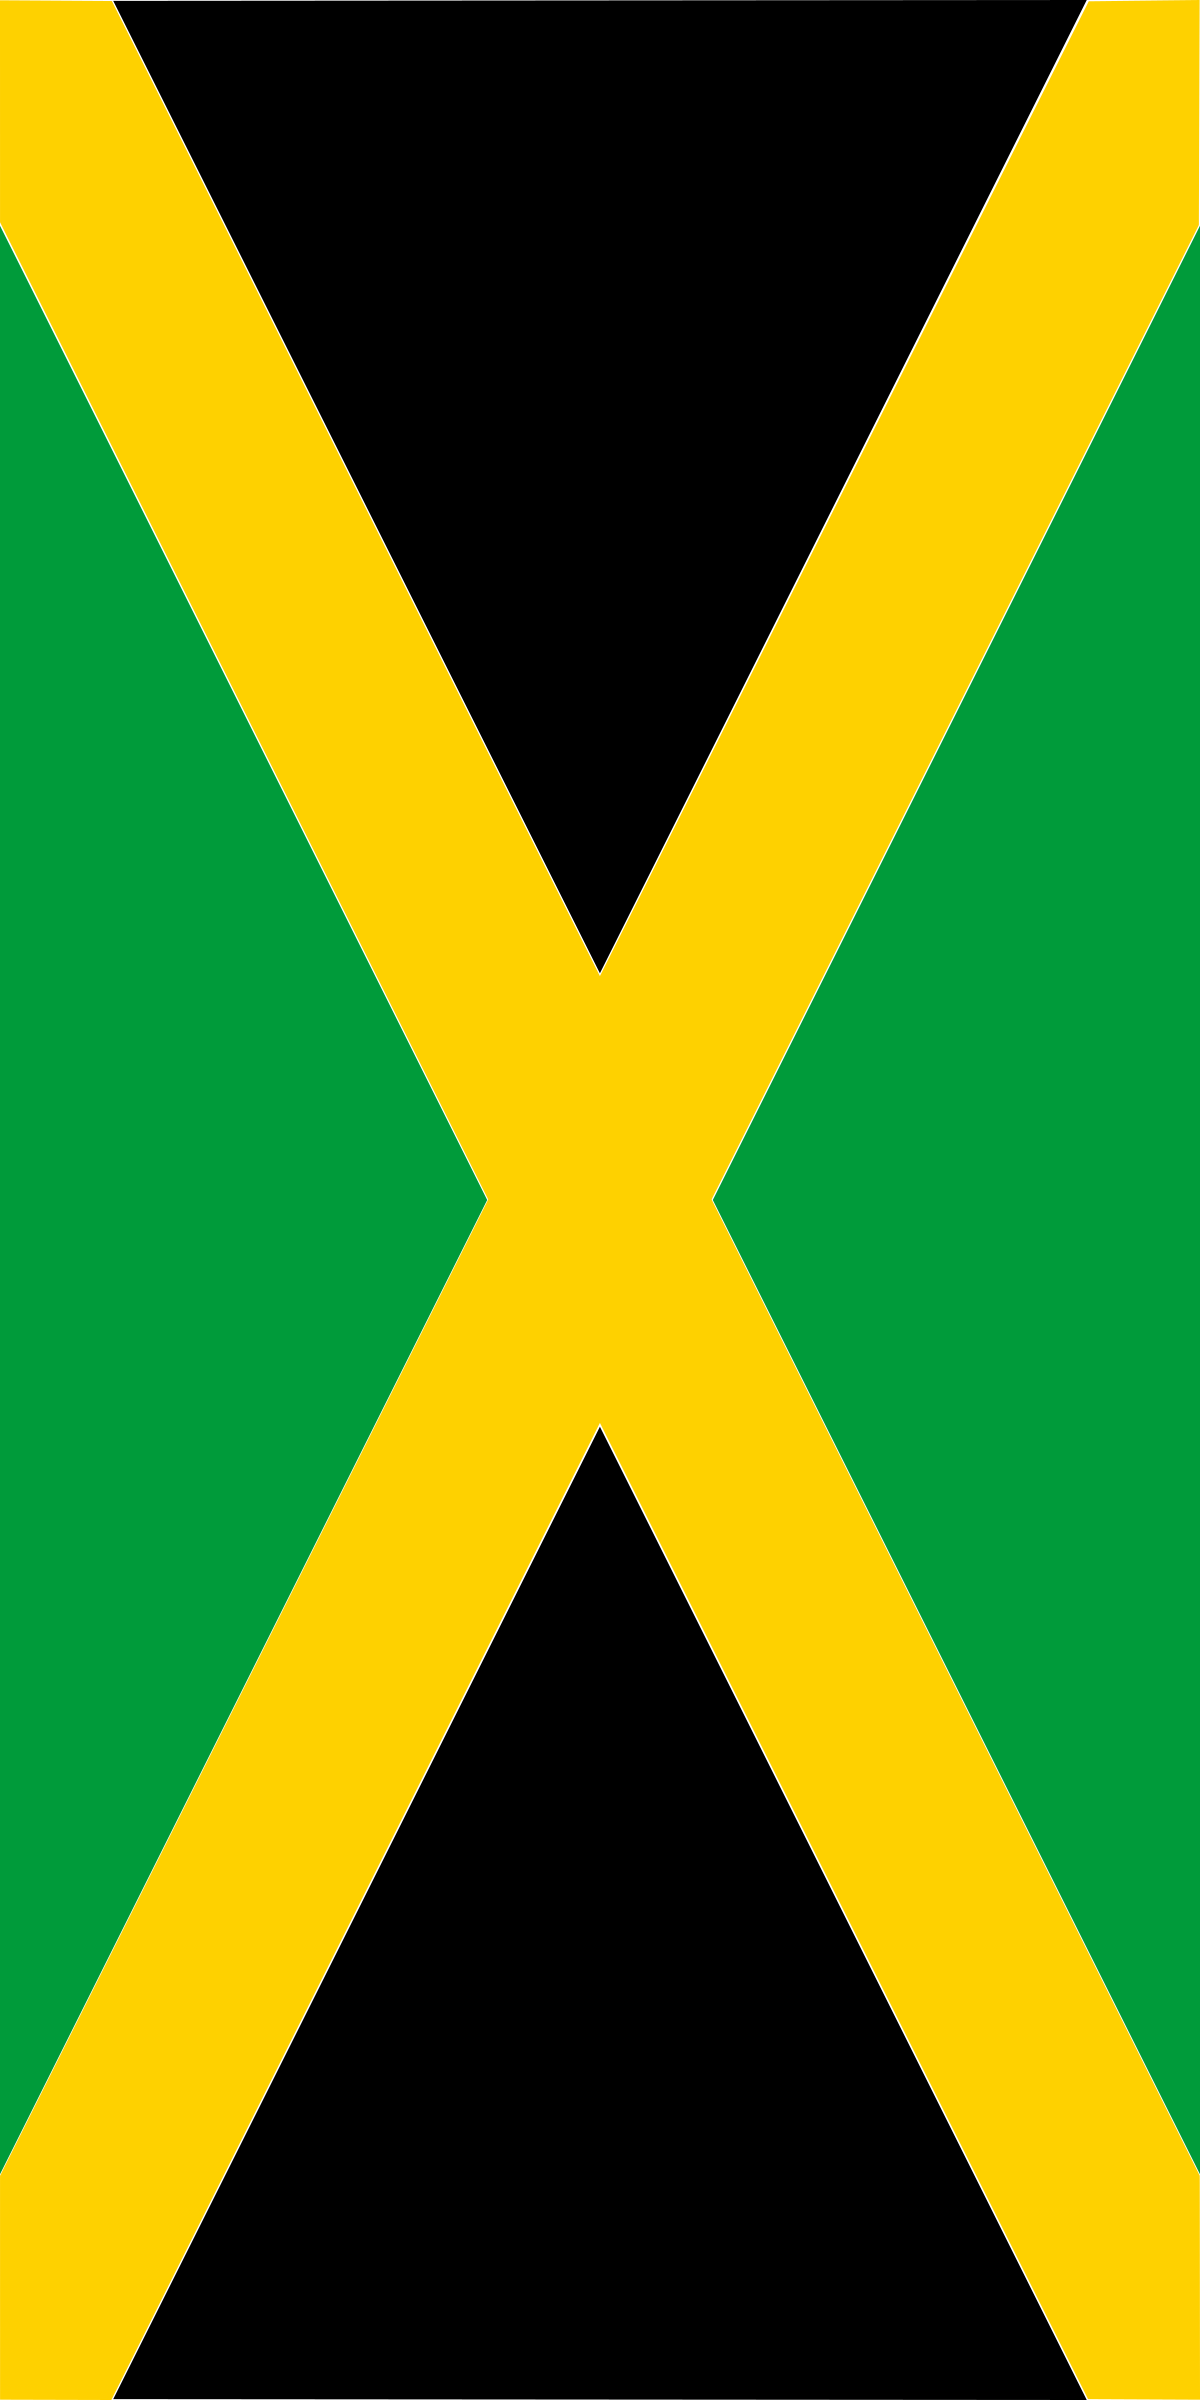 Jamaica Flag Transparent Background